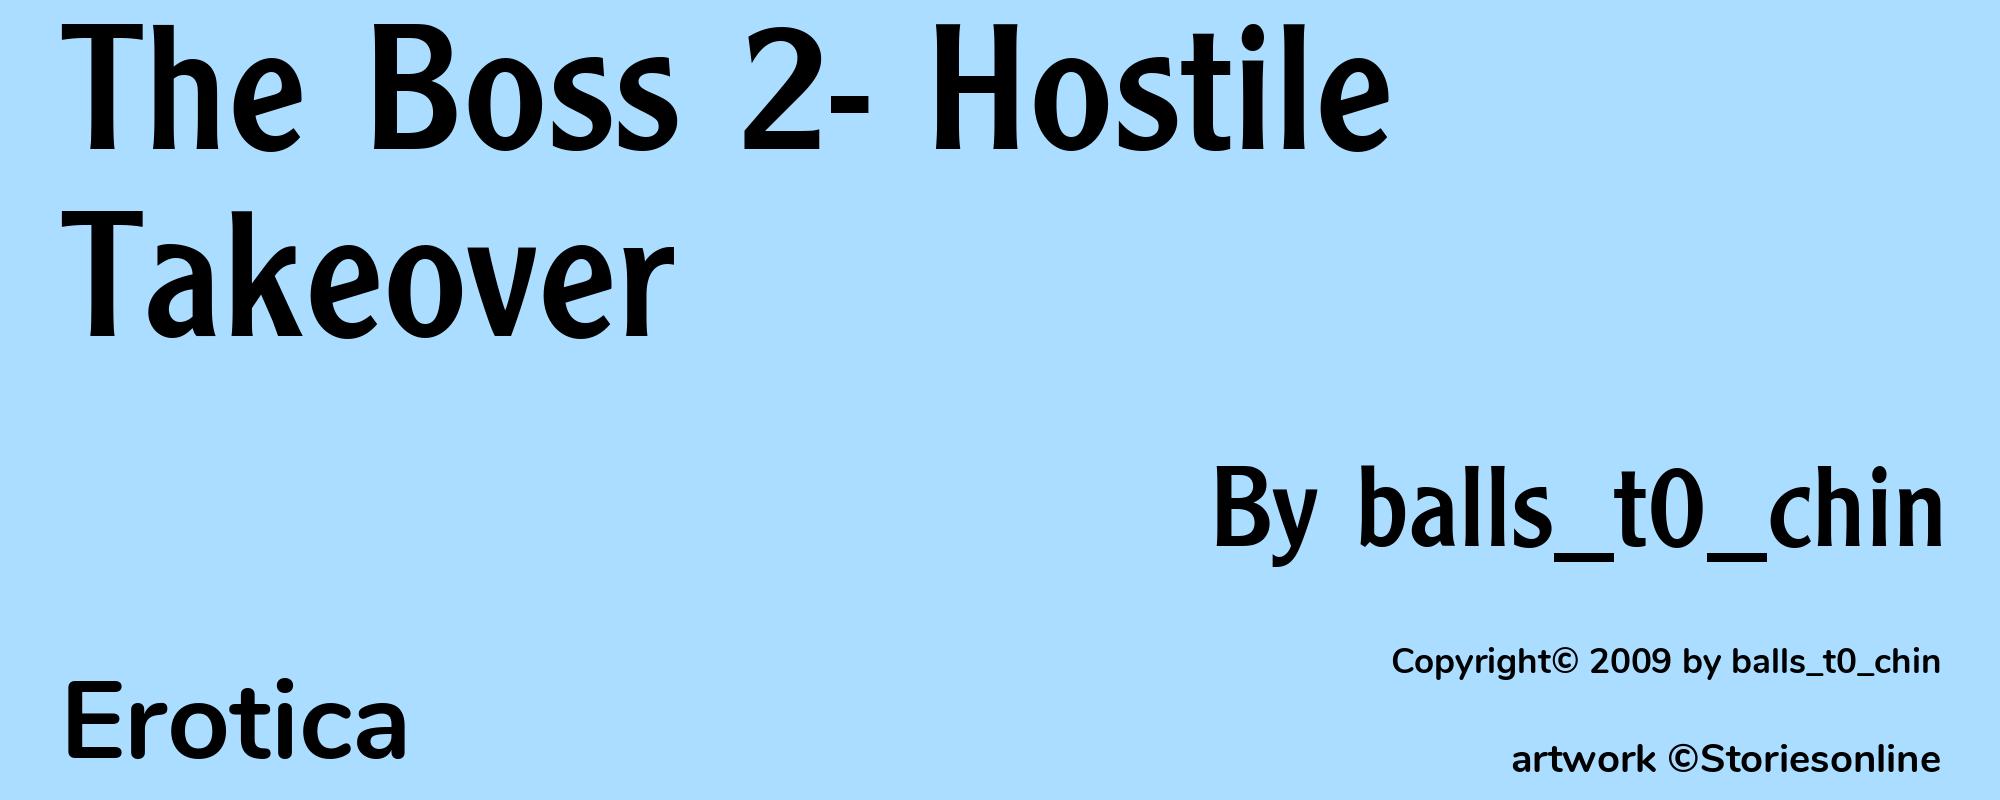 The Boss 2- Hostile Takeover - Cover